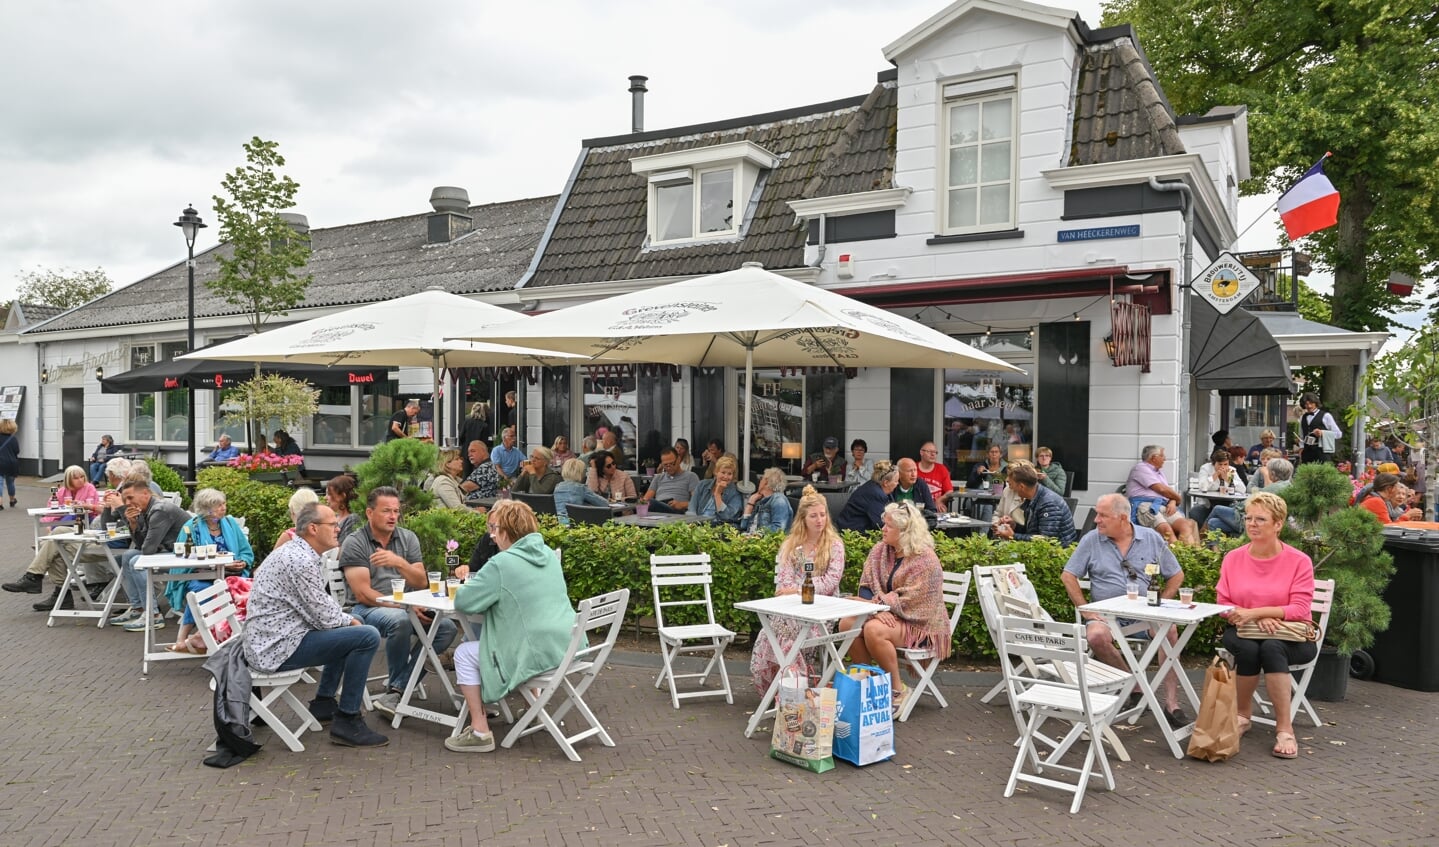 Gezellig op het terras voor een hapje en drankje. Foto: Achterhoekfoto.nl/Henk den Brok